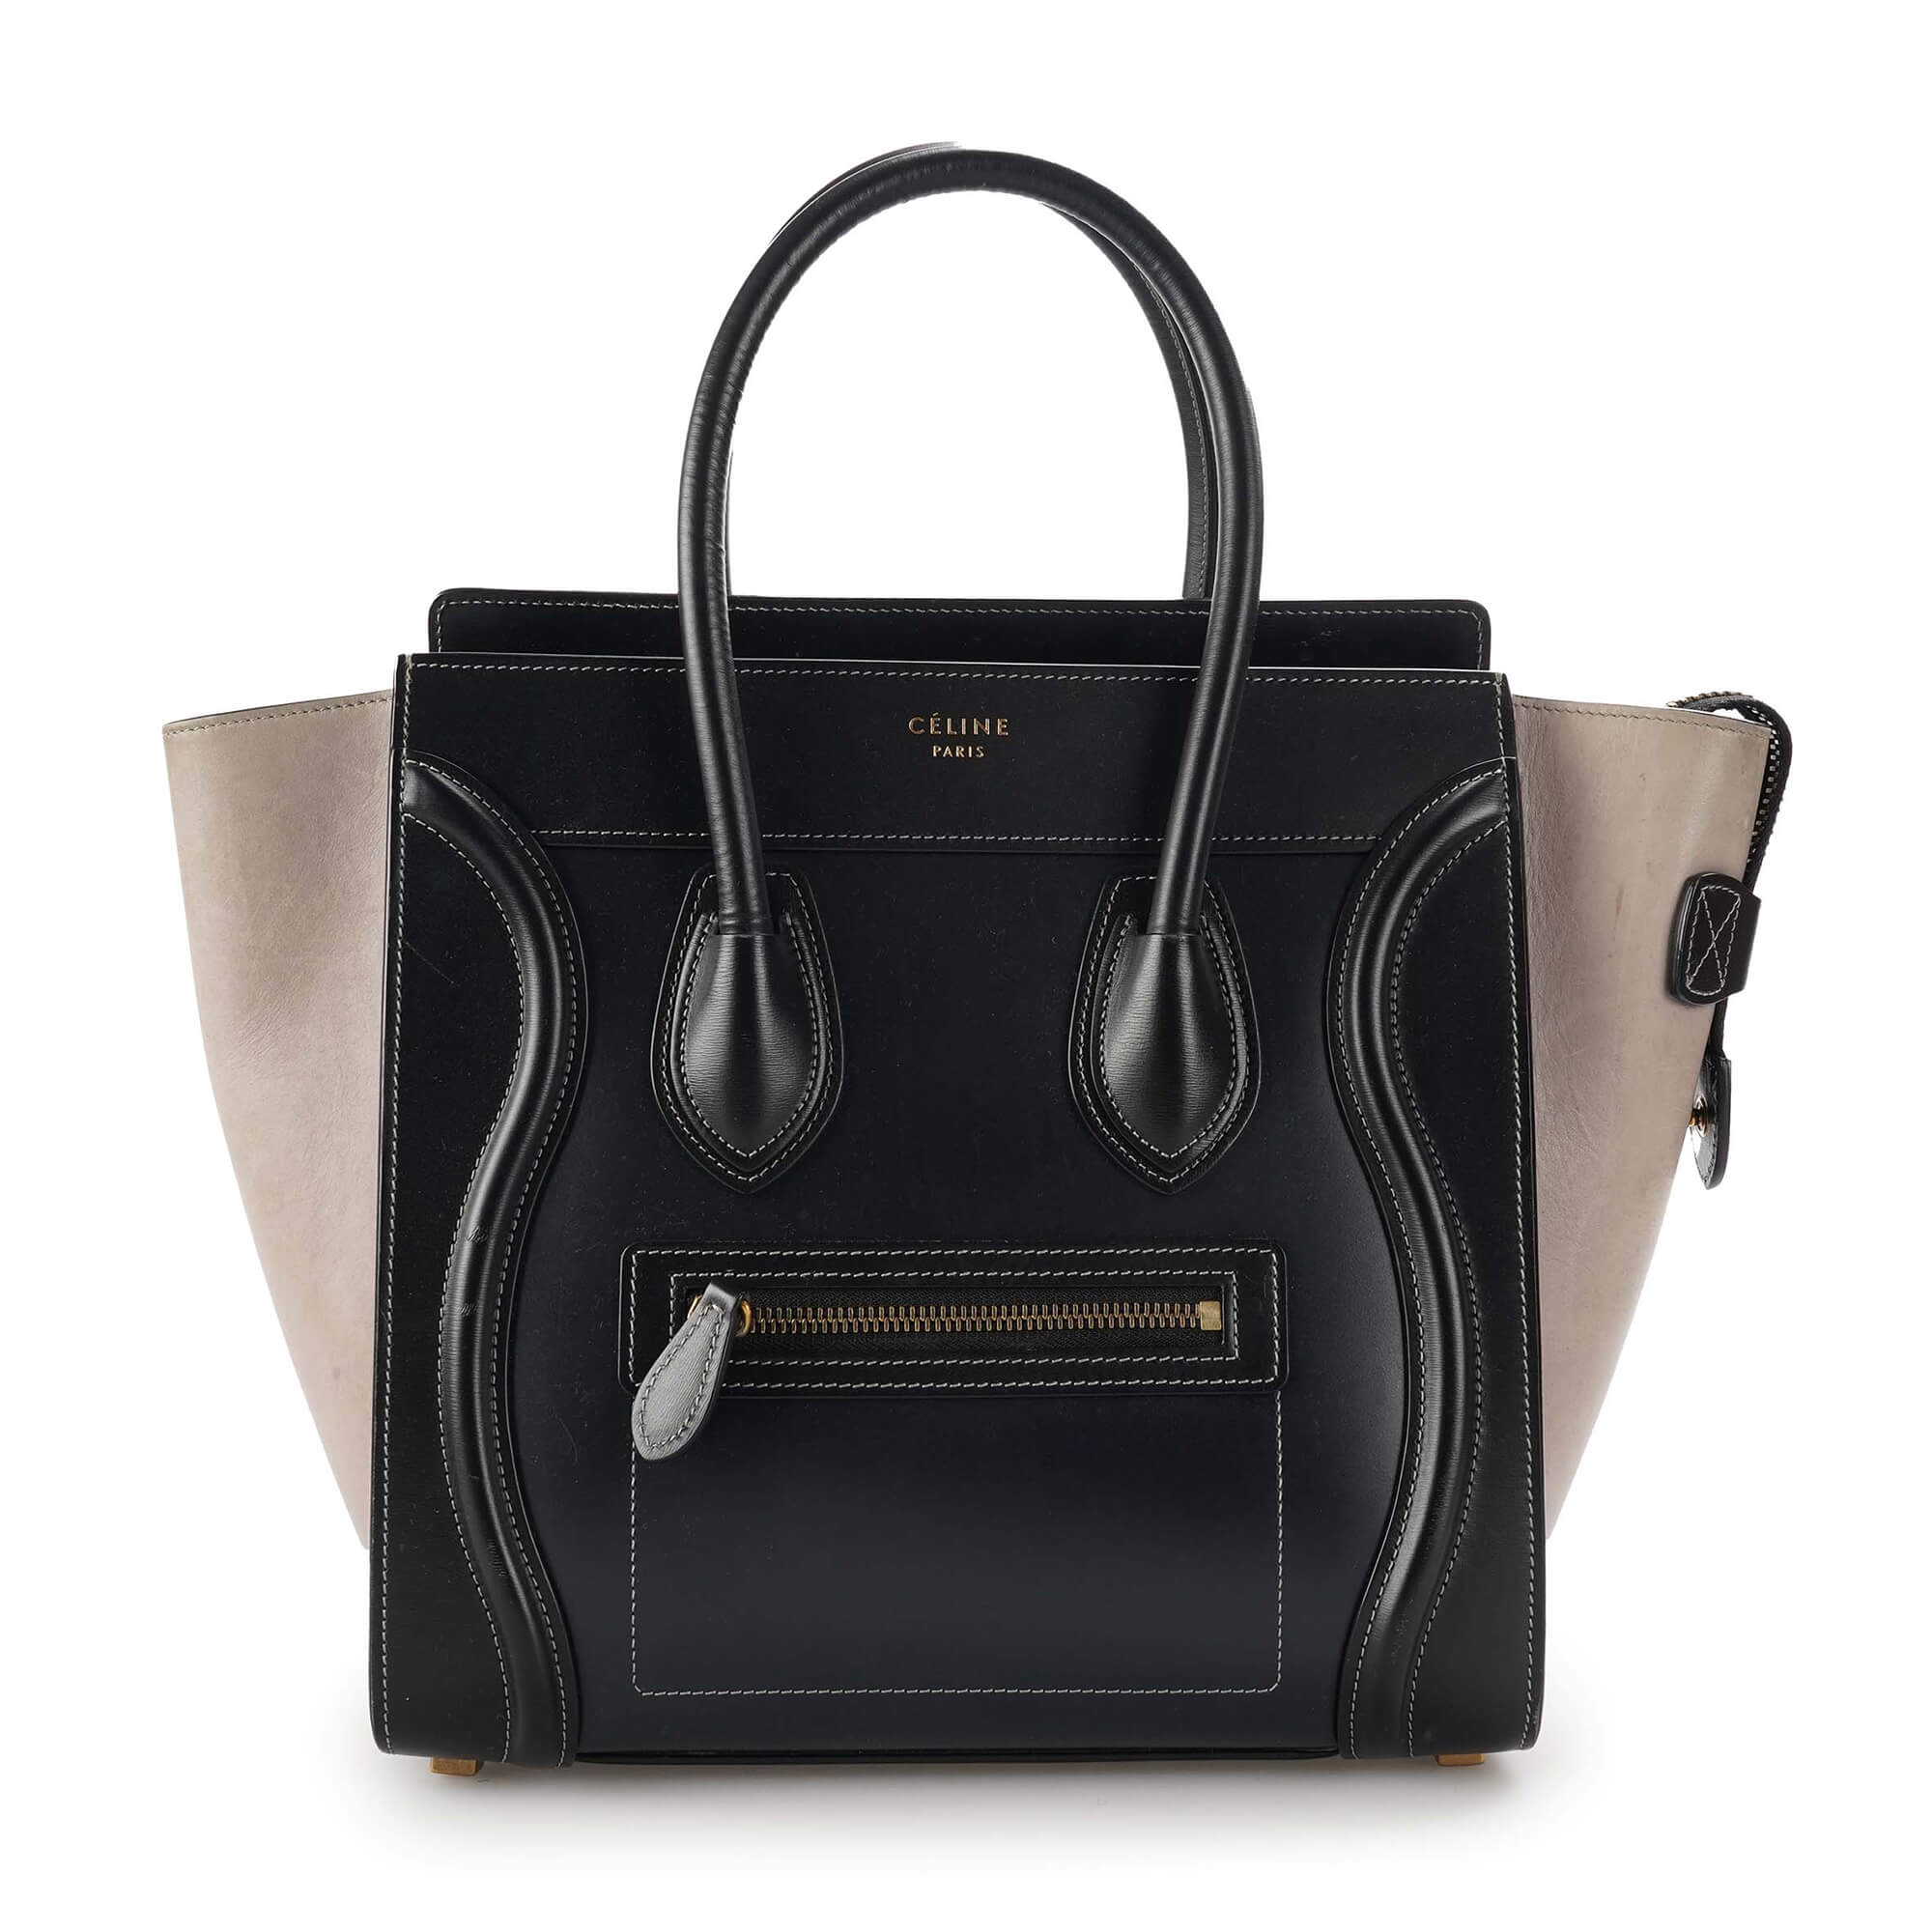 Celine - Black / Navy / Etoupe Leather Small Luggage Bag 